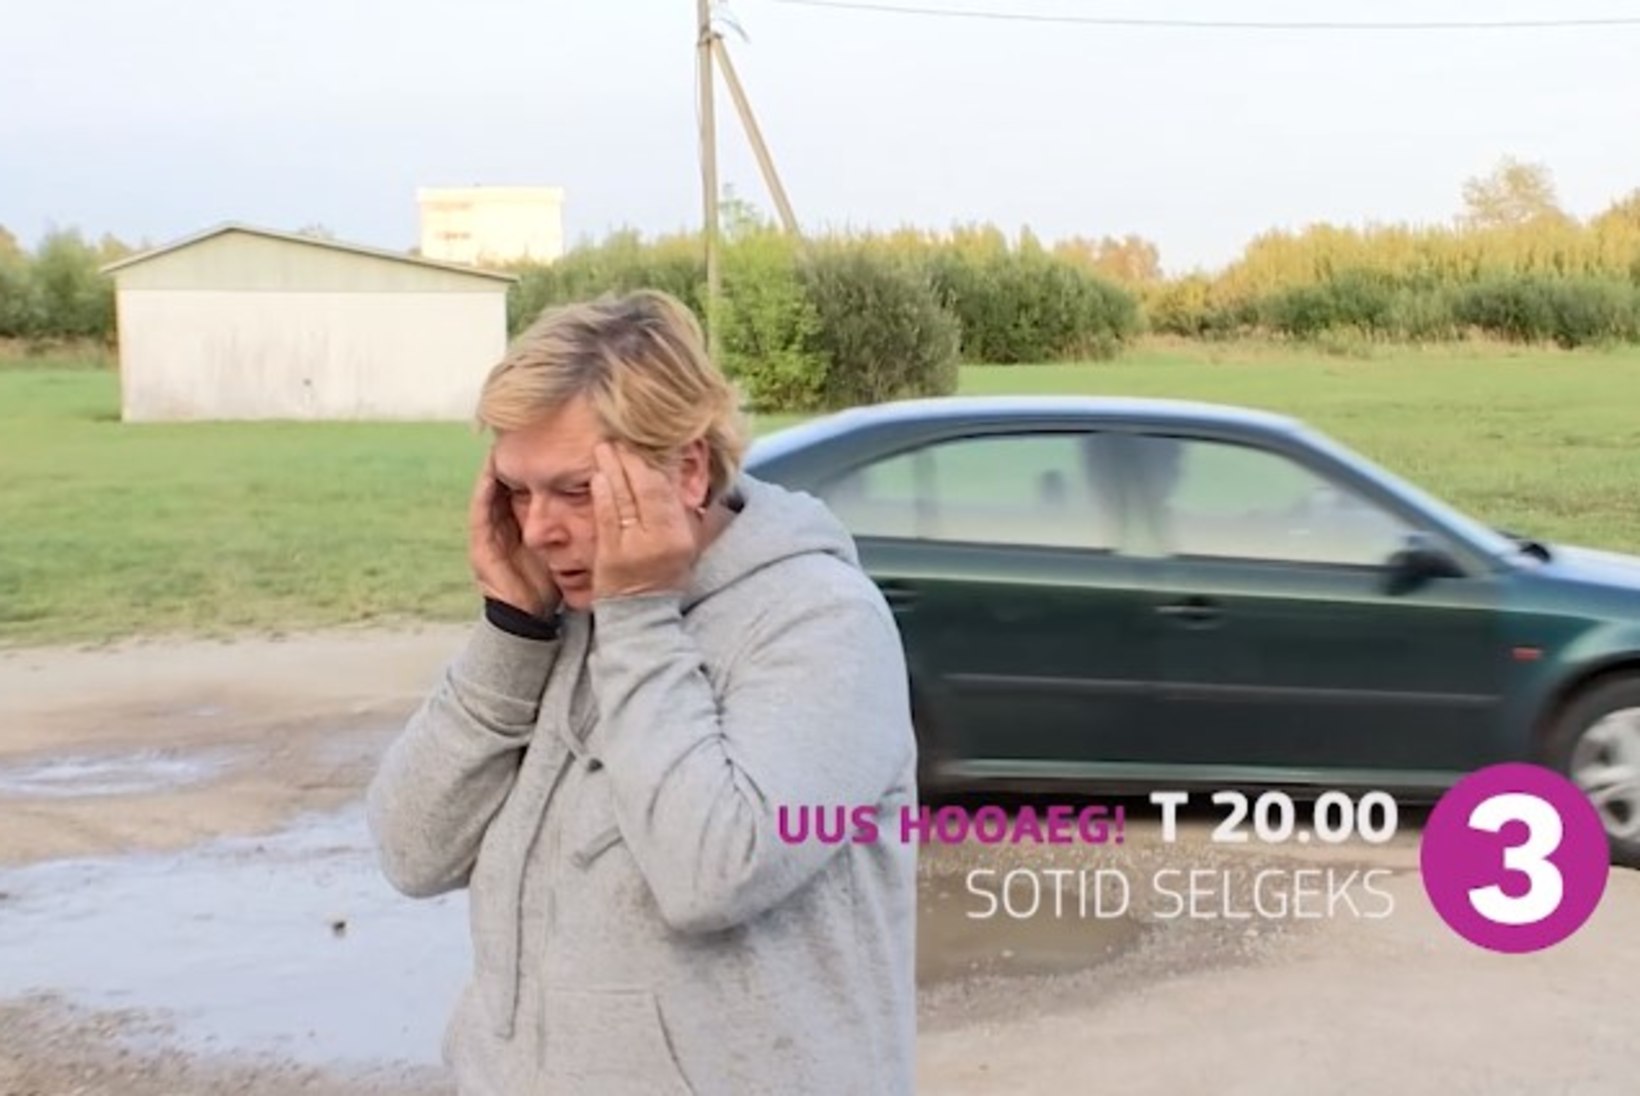 LIGIMESEARMASTUS: Eesti inimesed soovivad aidata „Sotid selgeks“ saates olnud võlgades prouat